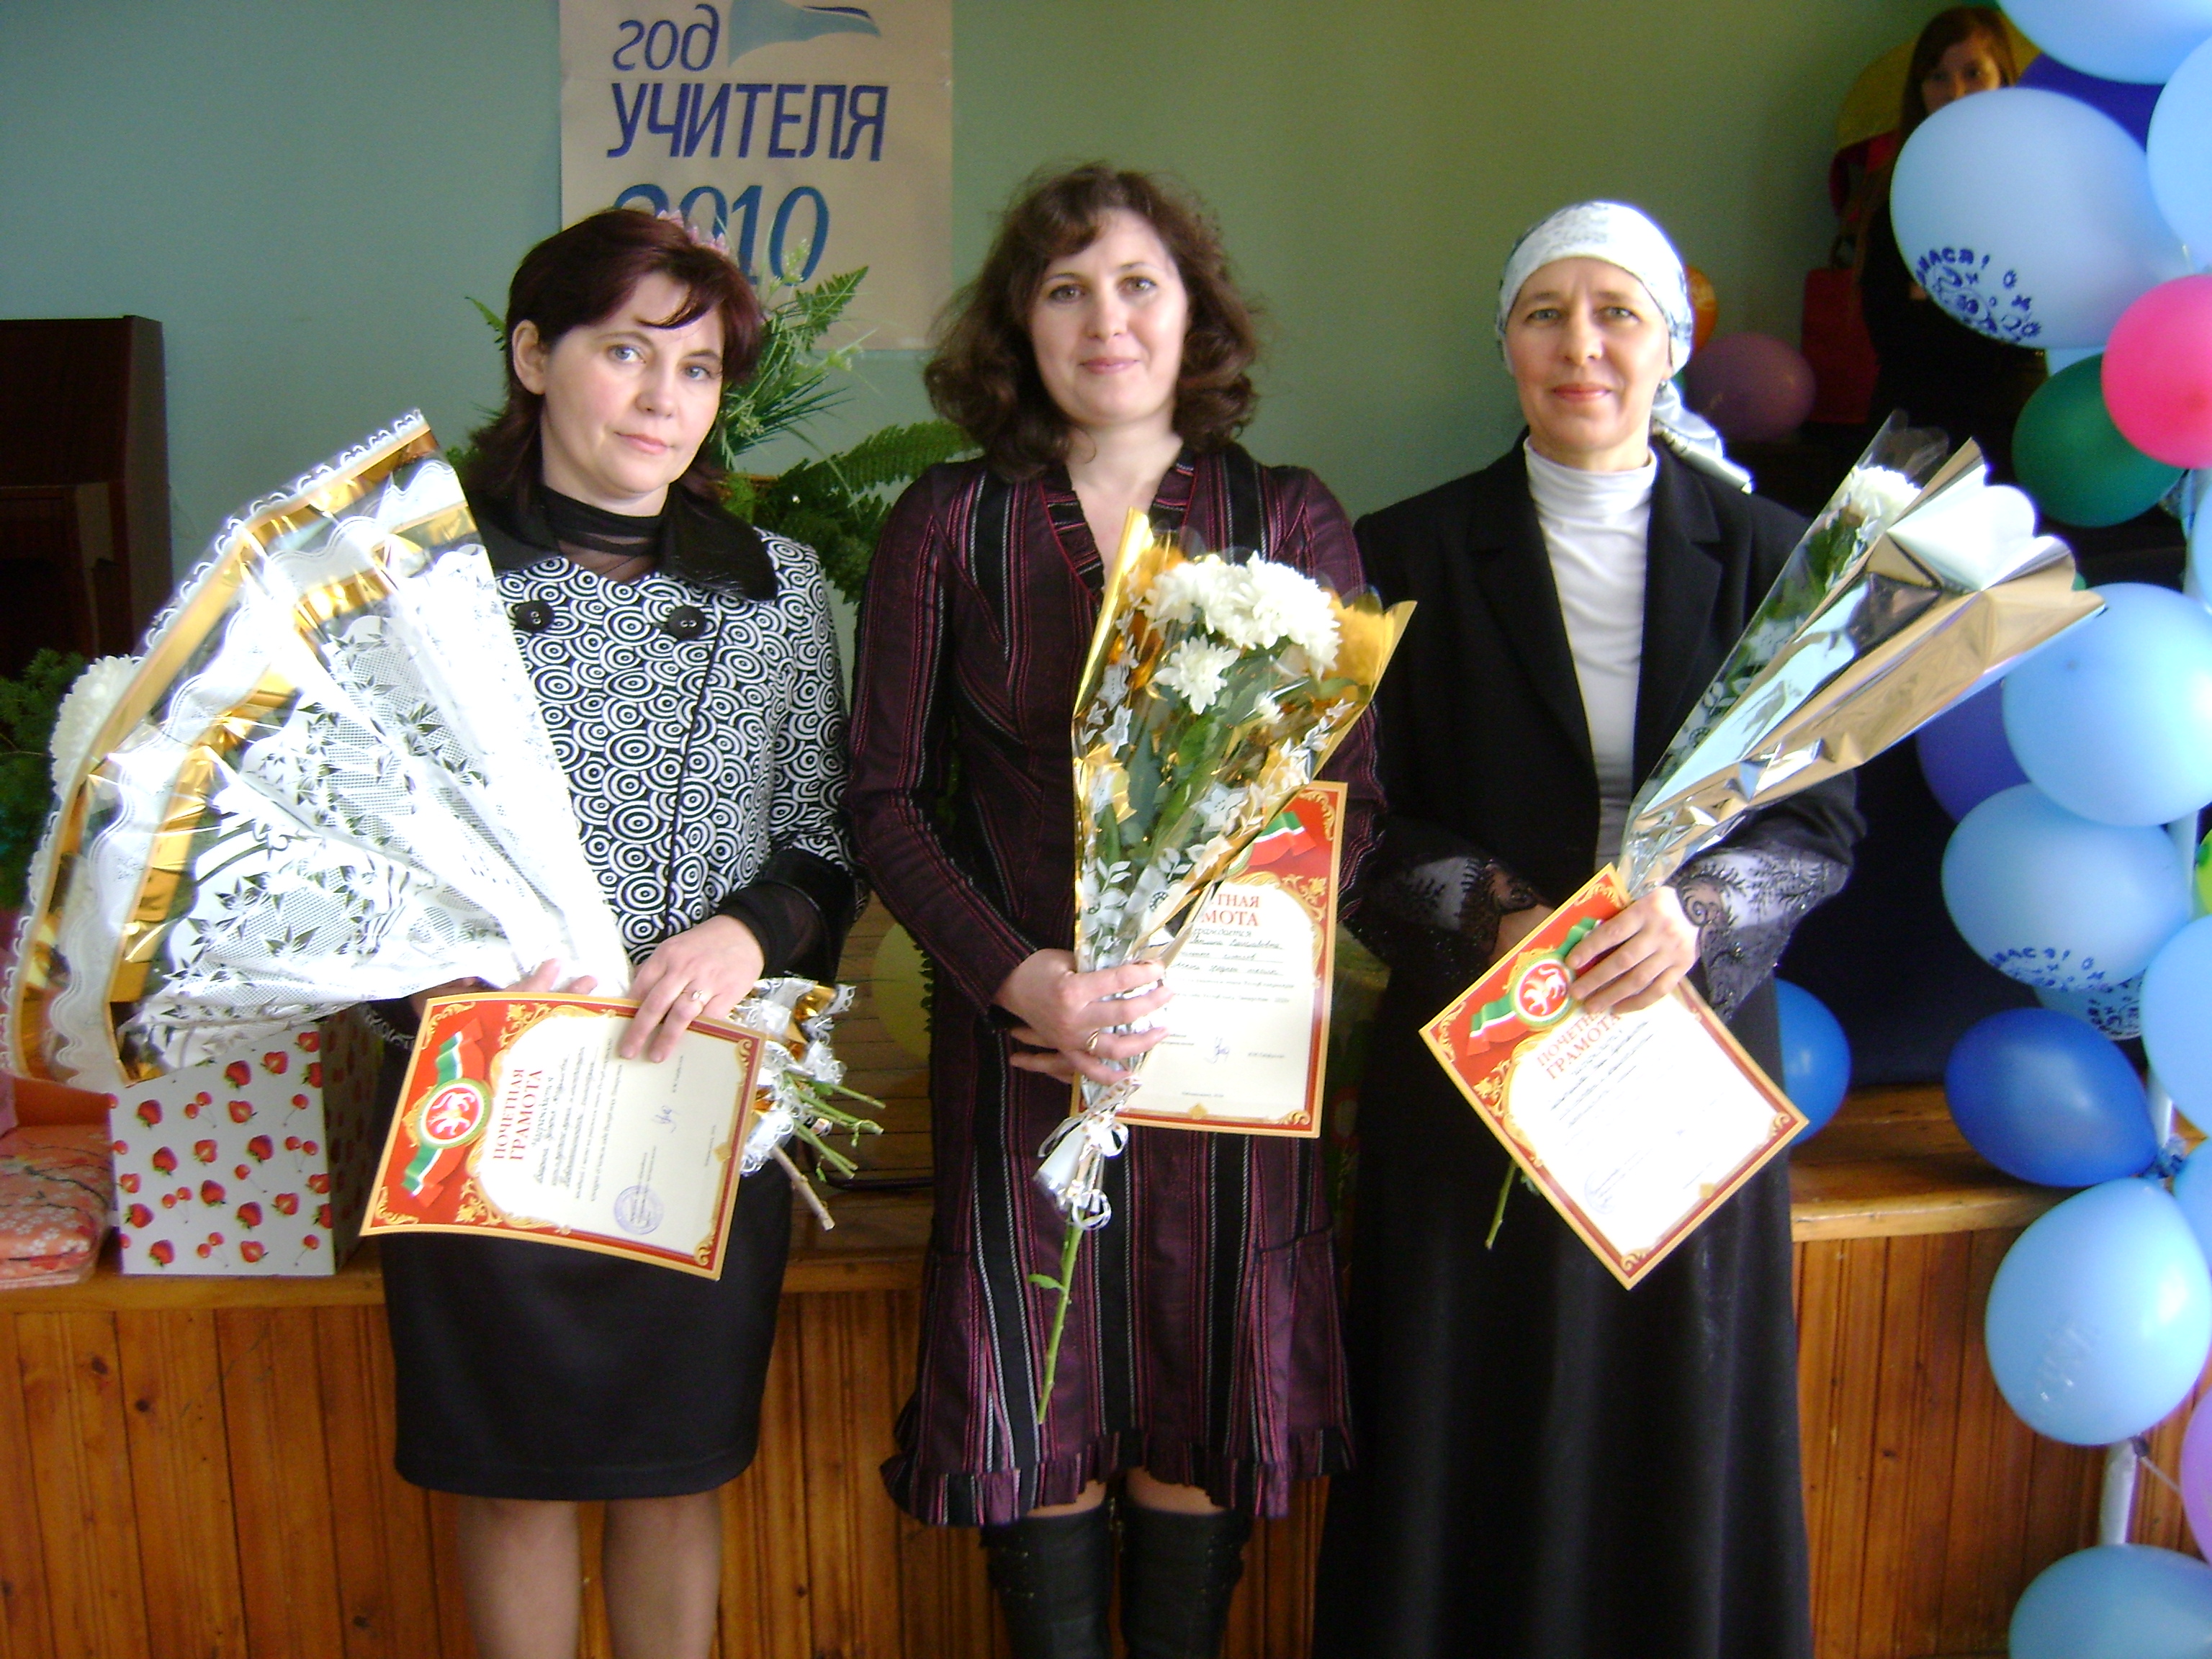 Победители конкурса учитель года 2010